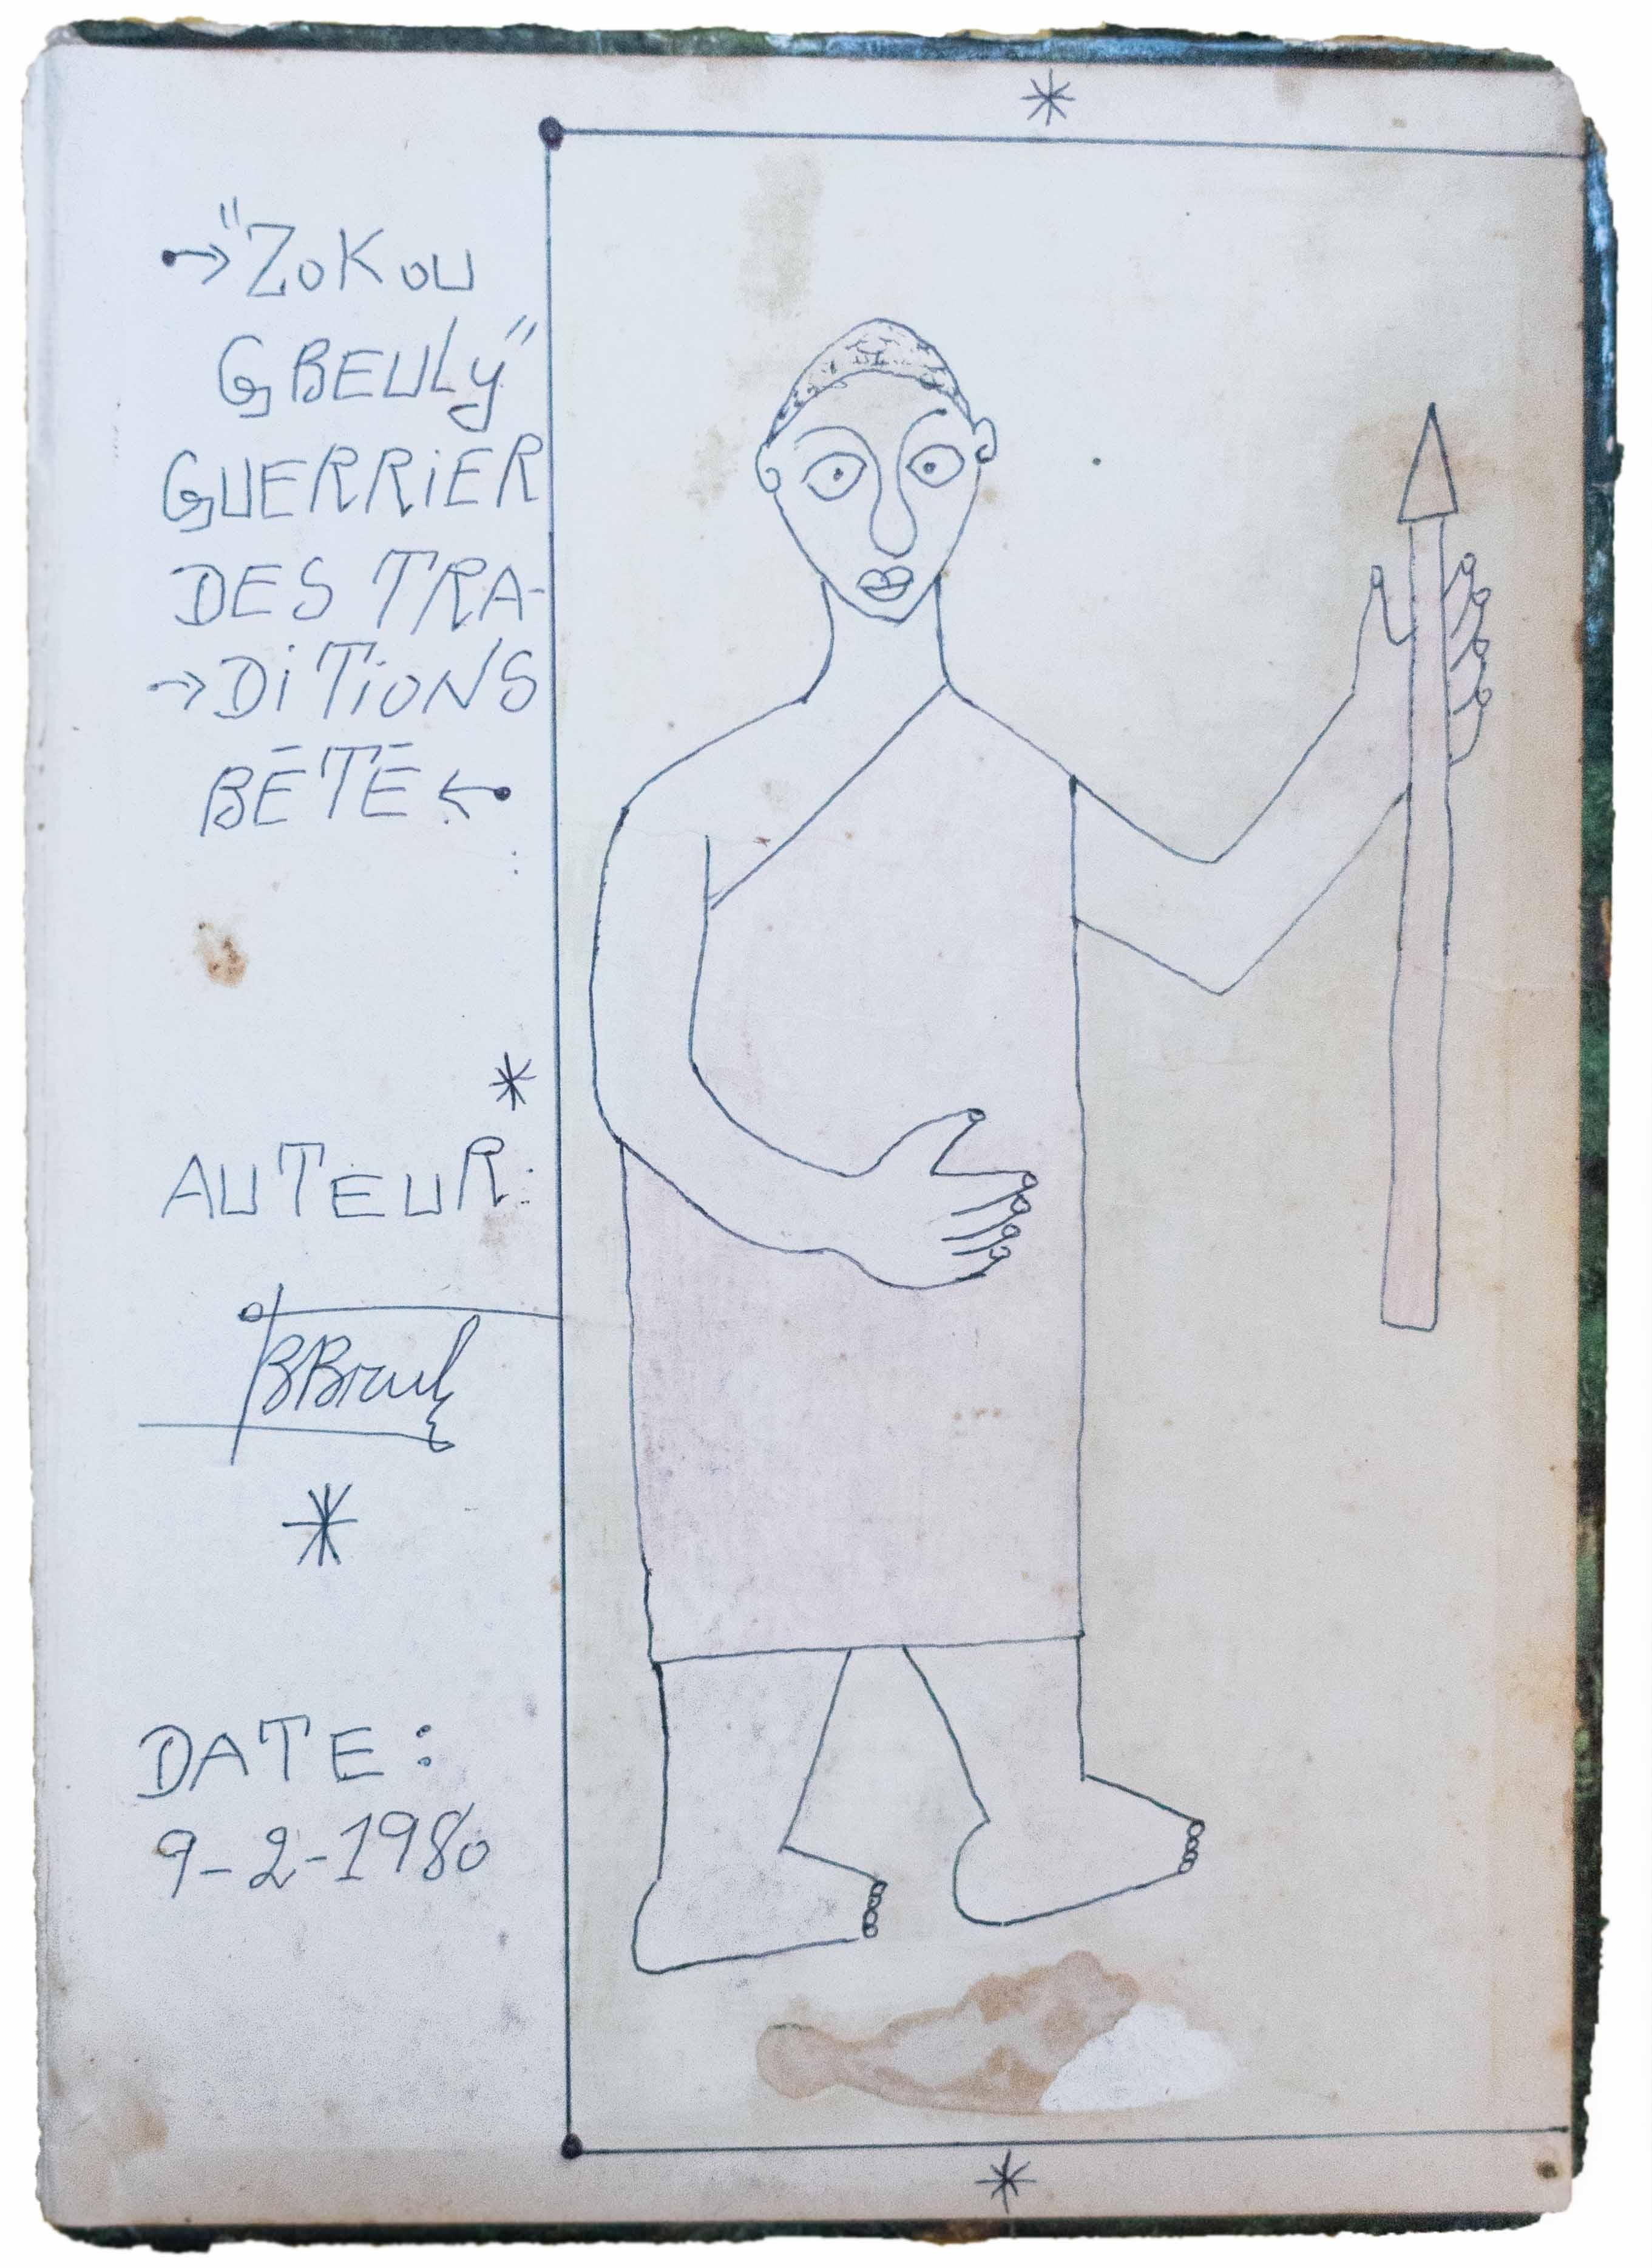 Zokou Gbeuli guerrier des traditions Bété, 1980, African Art, Drawing